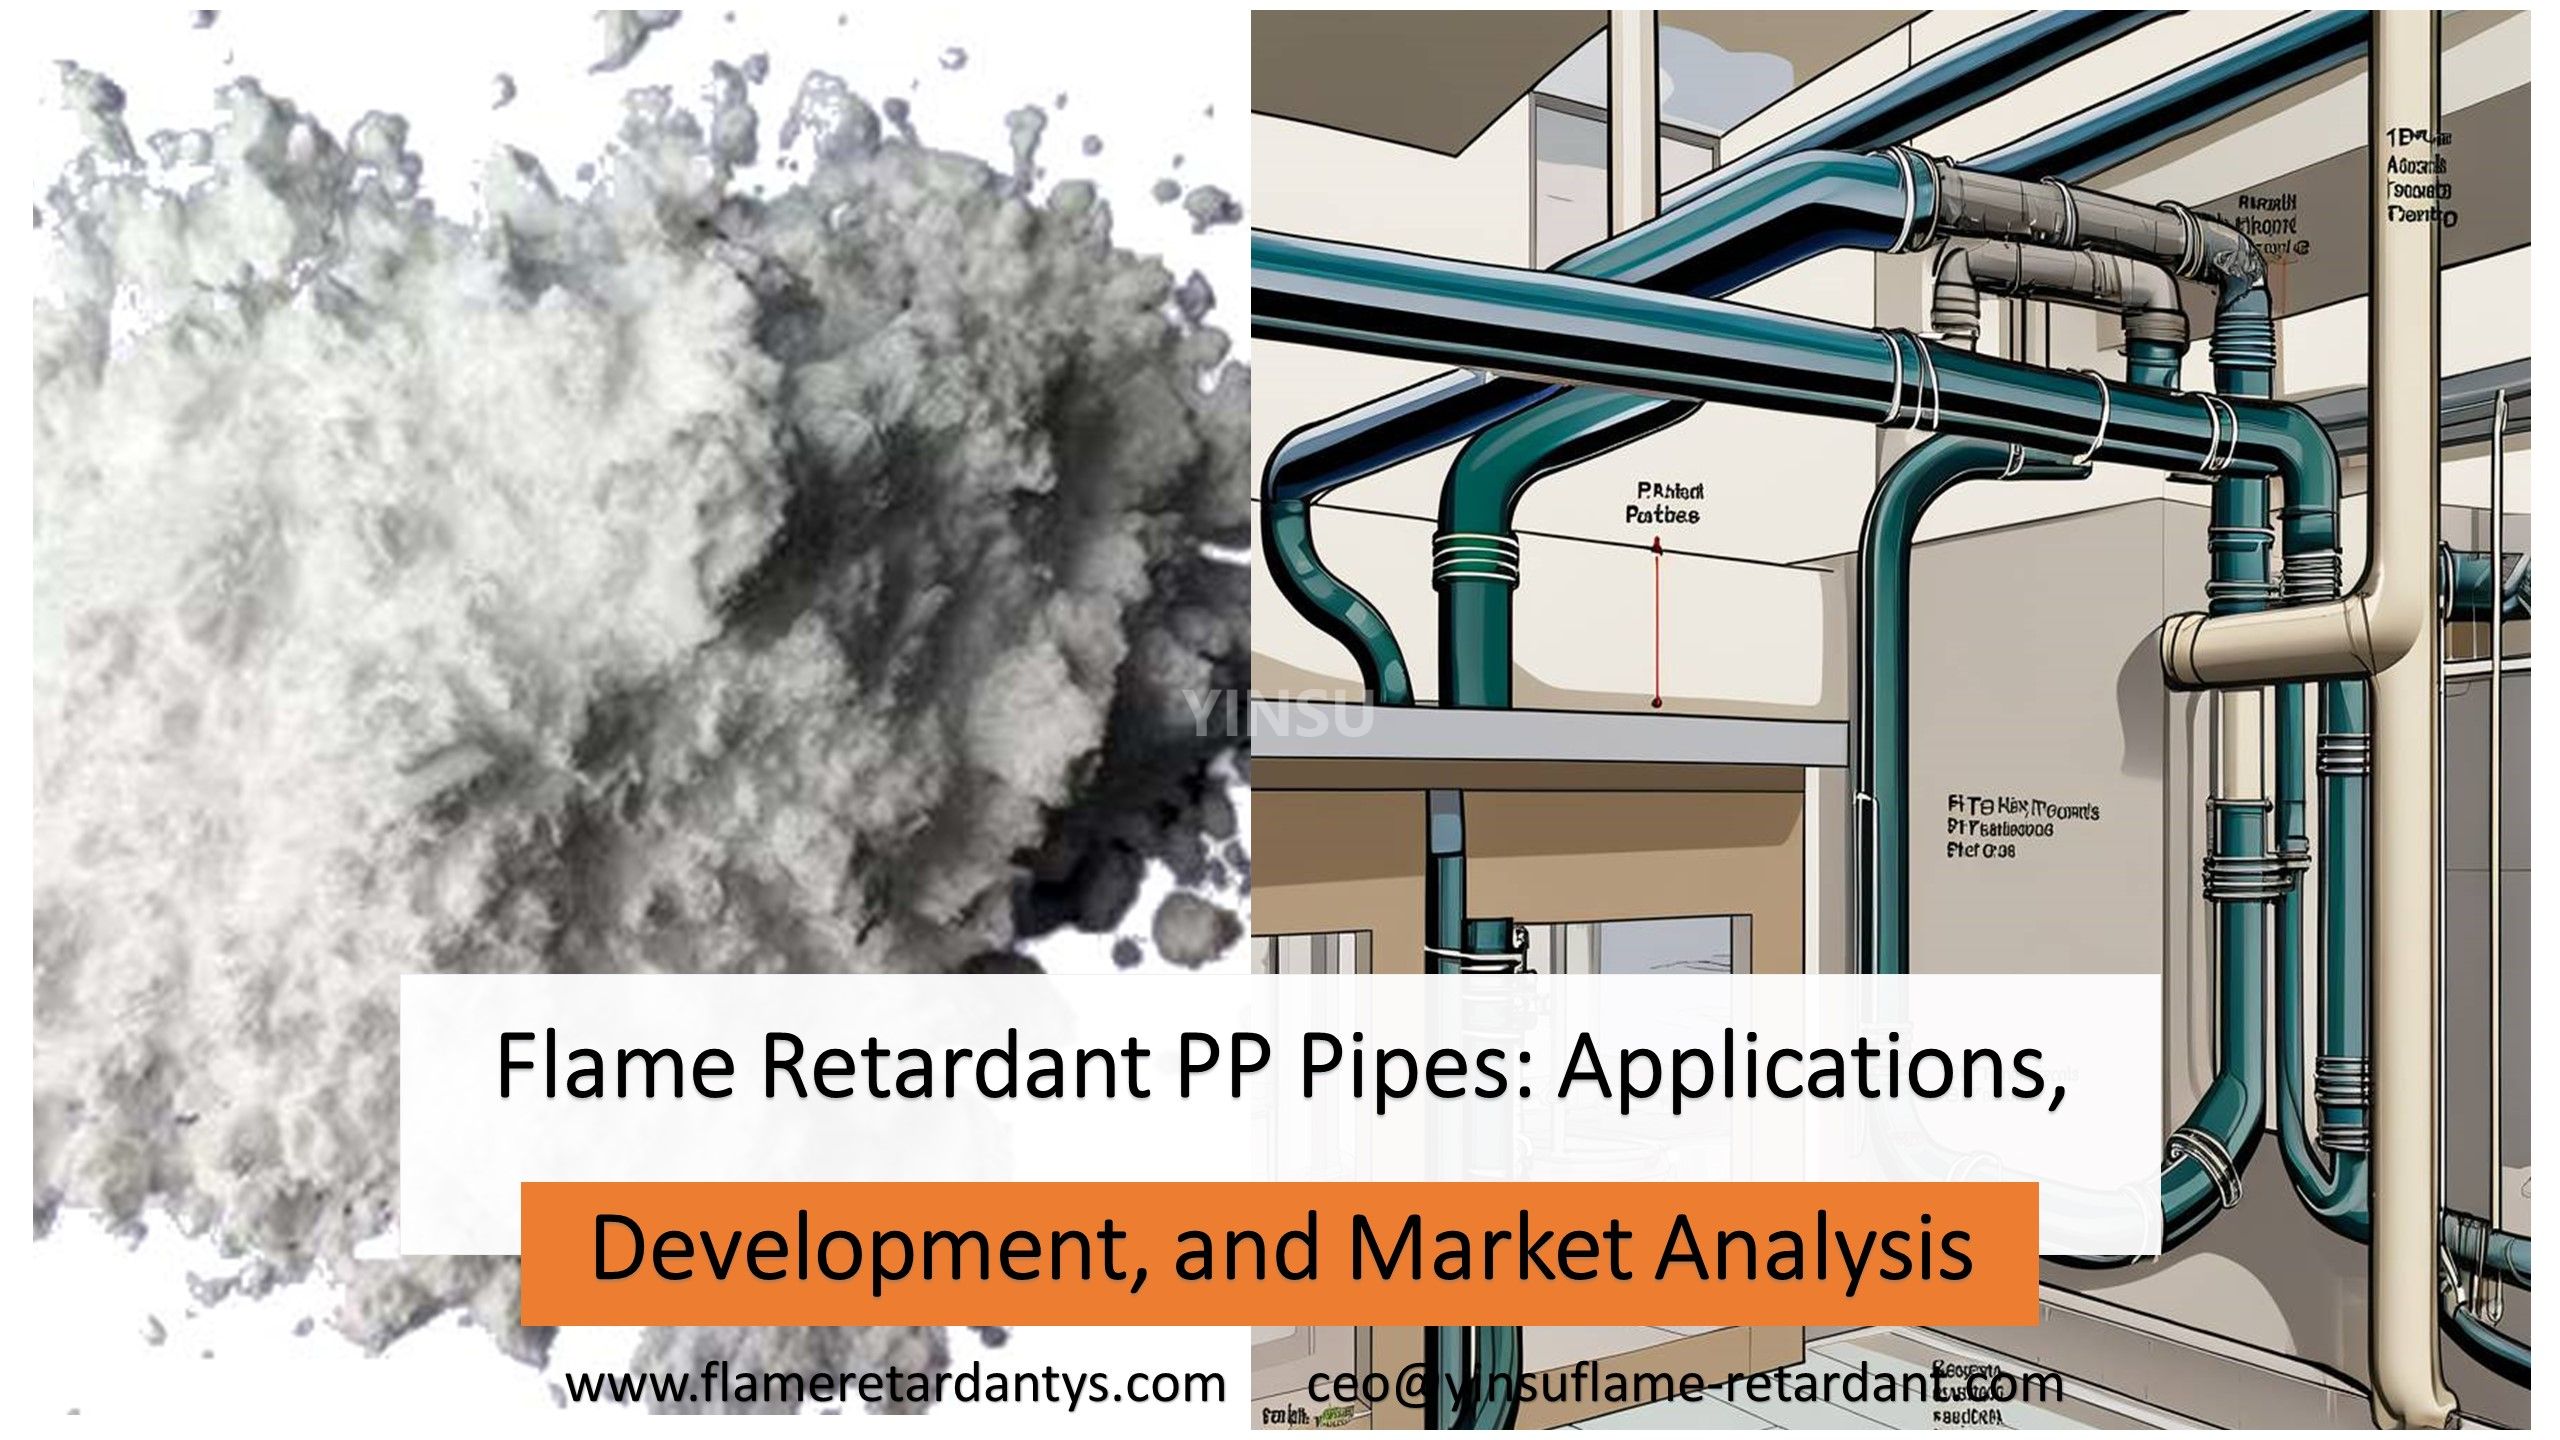 Aplicaciones, desarrollo y análisis de mercado de tuberías de PP retardantes de llama